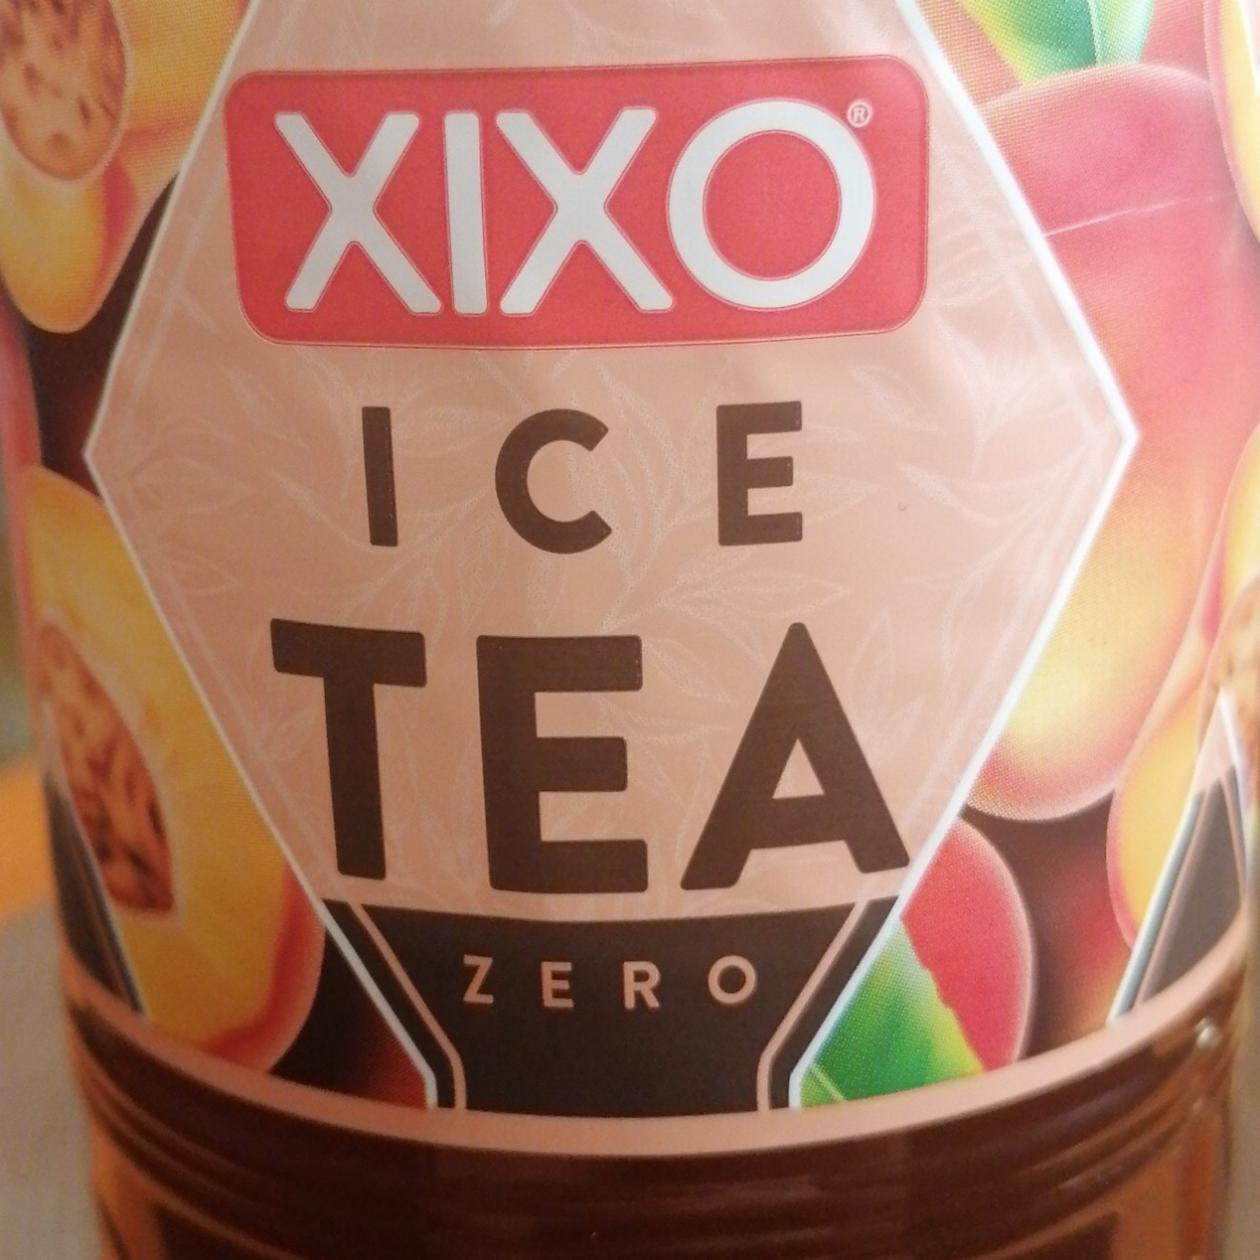 Fotografie - Ice Tea Zero Xixo